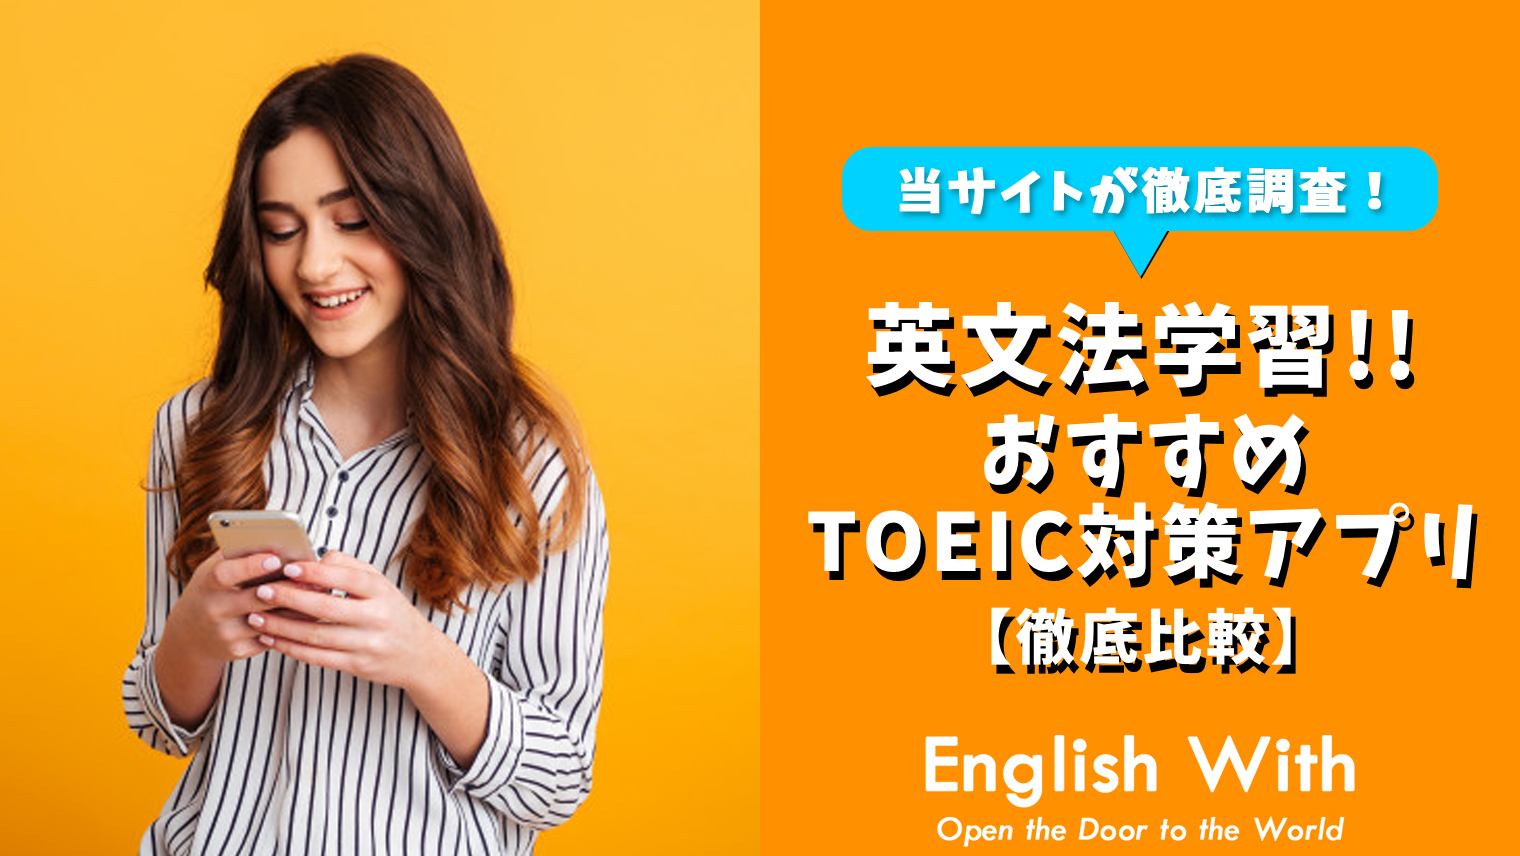 Toeicで必要な英文法が学べる おすすめ英語学習アプリを紹介 8選 おすすめ英会話 英語学習の比較 ランキング English With